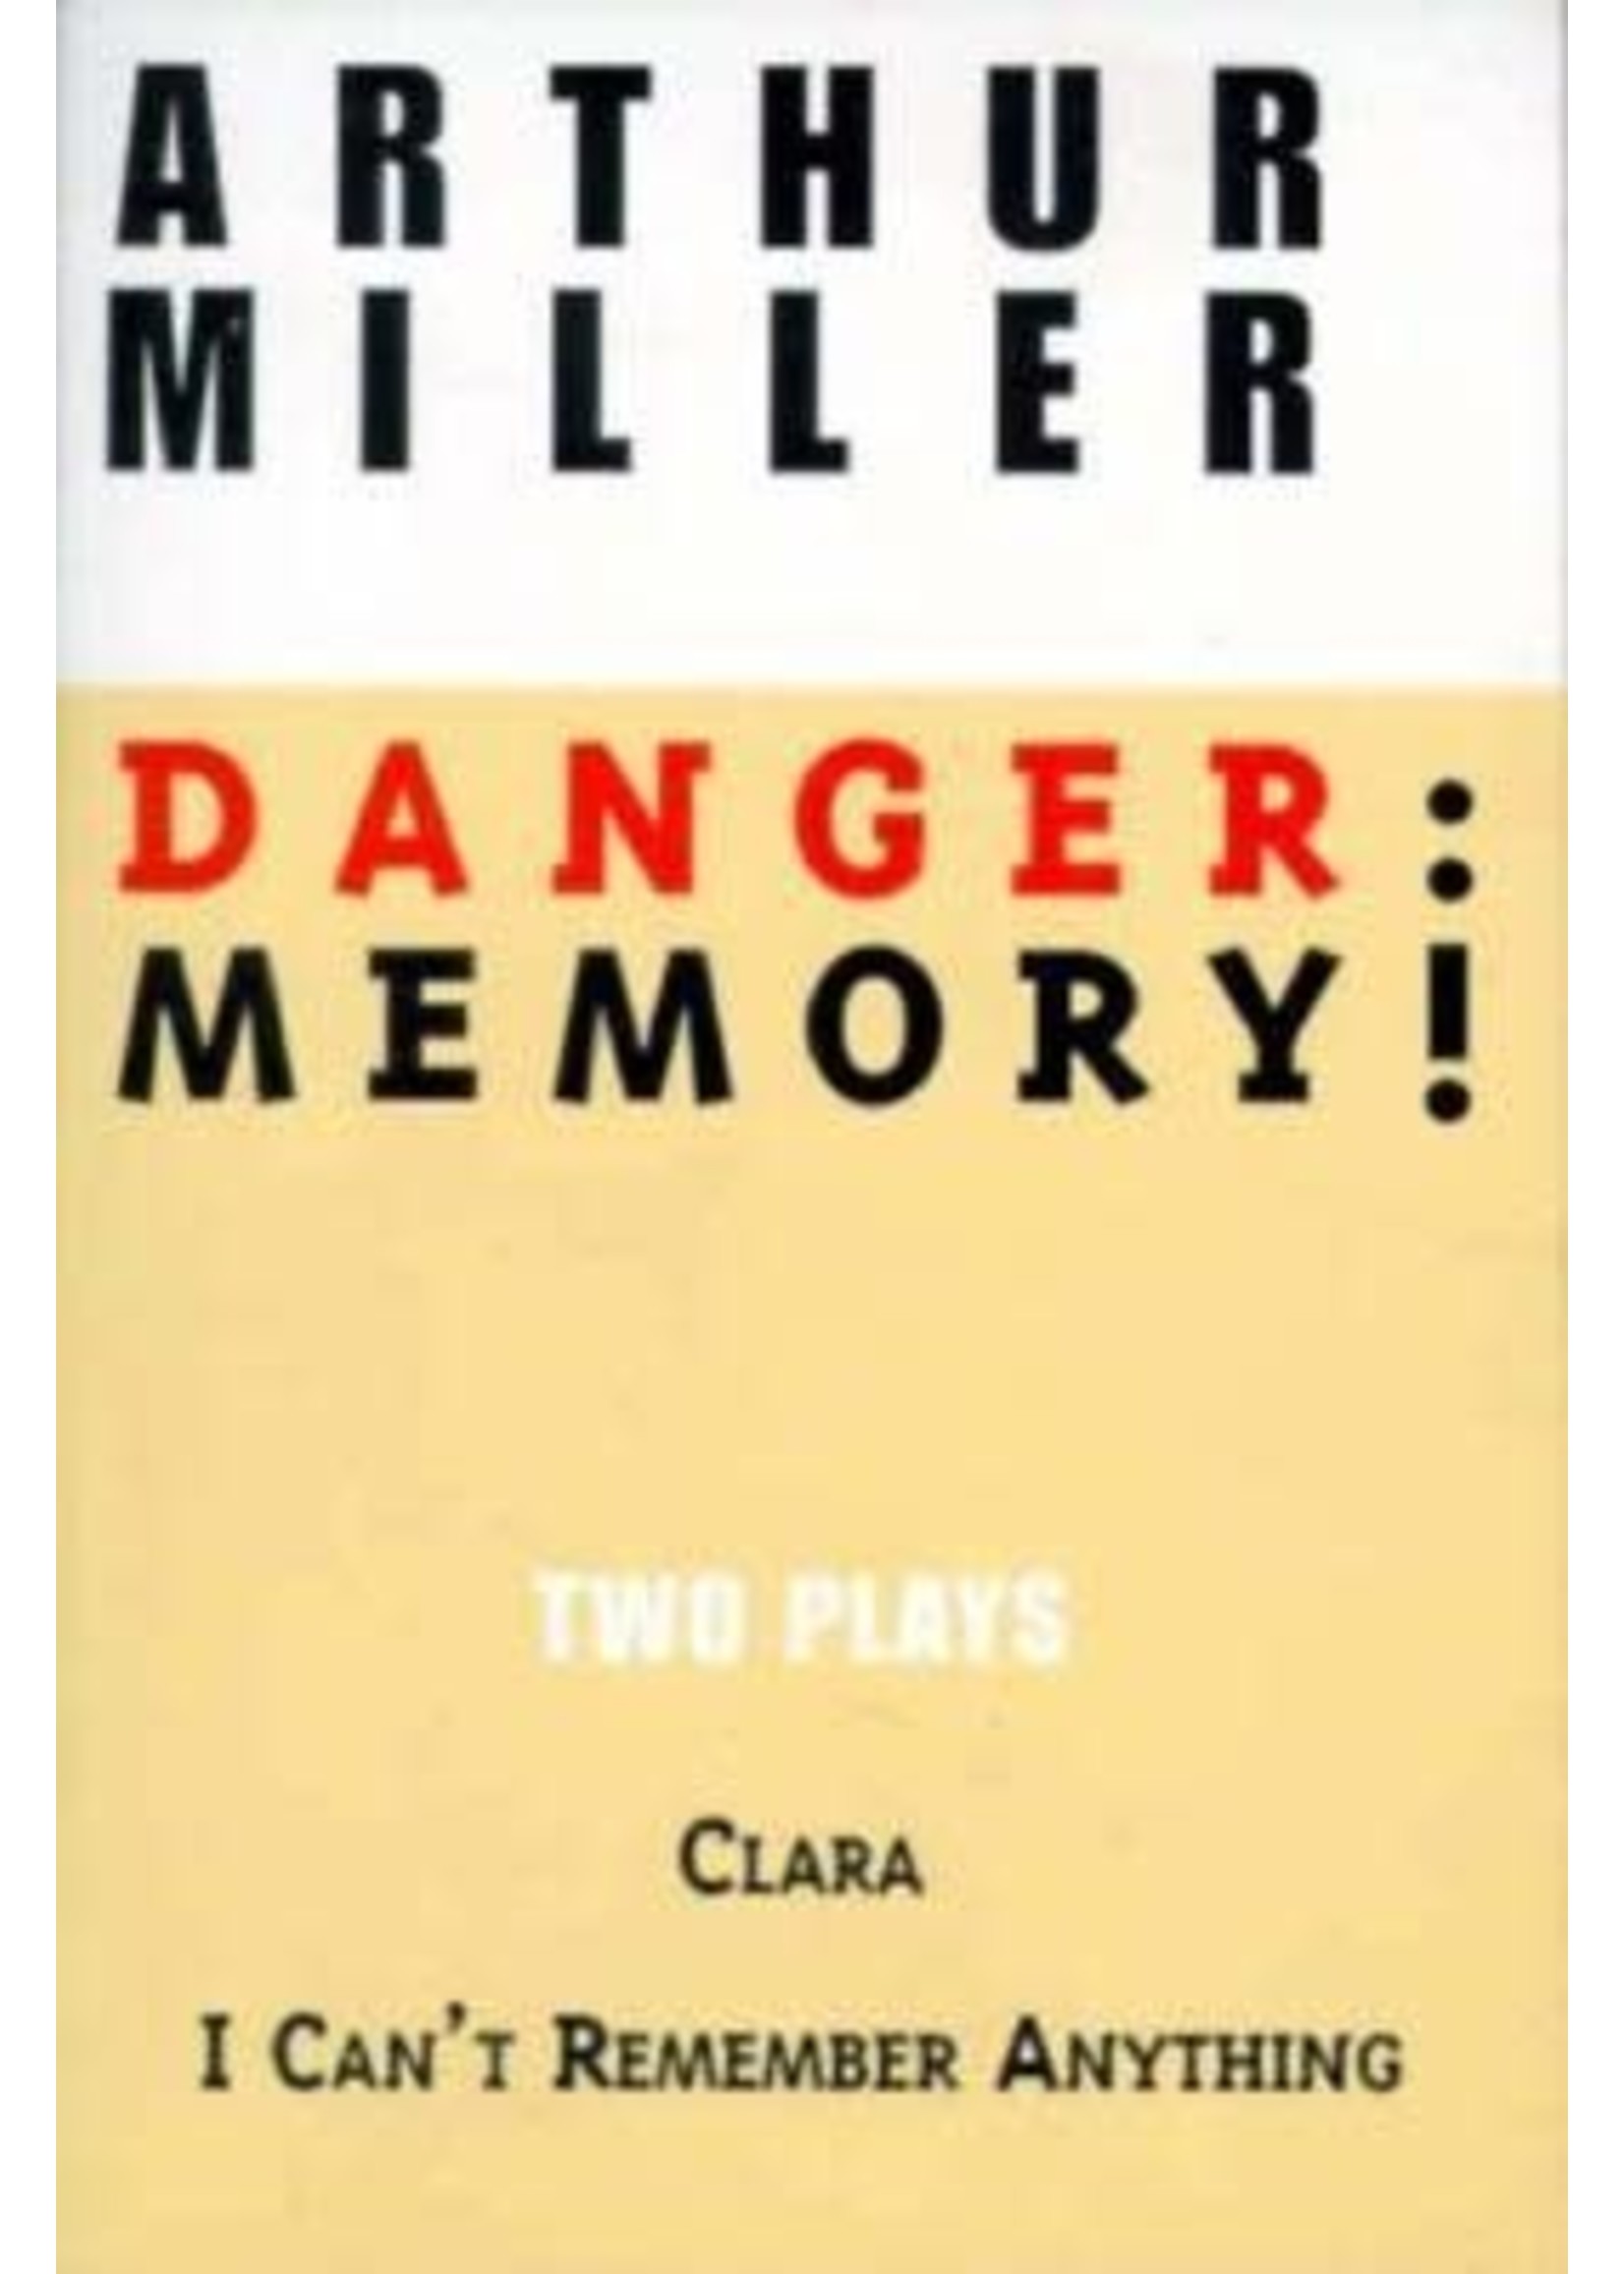 Danger: Memory! by Arthur Miller